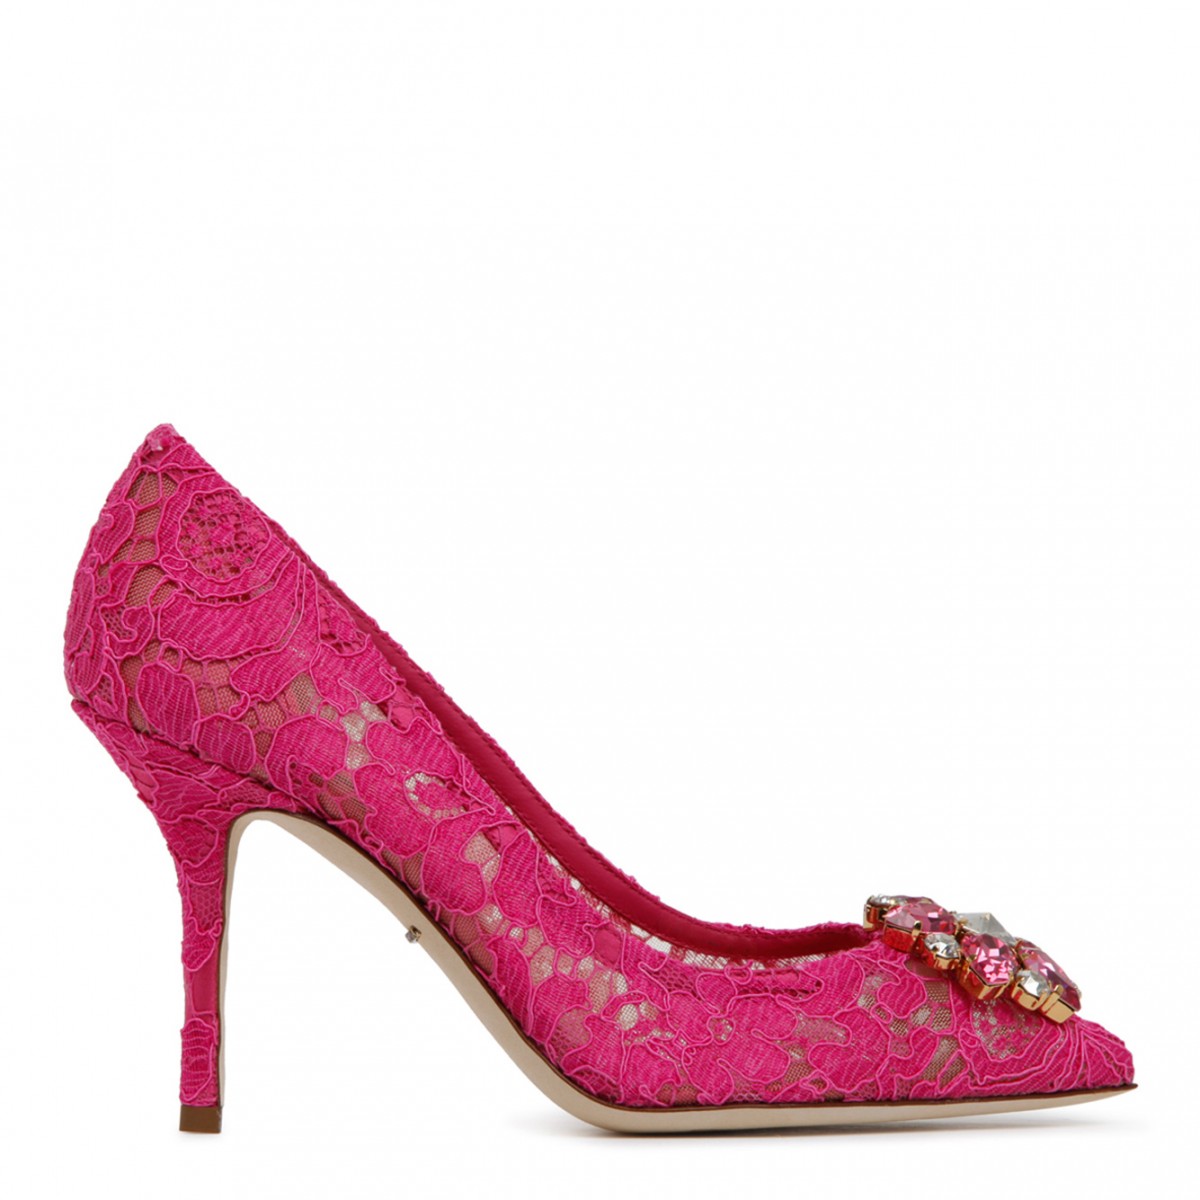 Dolce & Gabbana Pink Calf Leather Blend Bellucci Taormina Pumps.